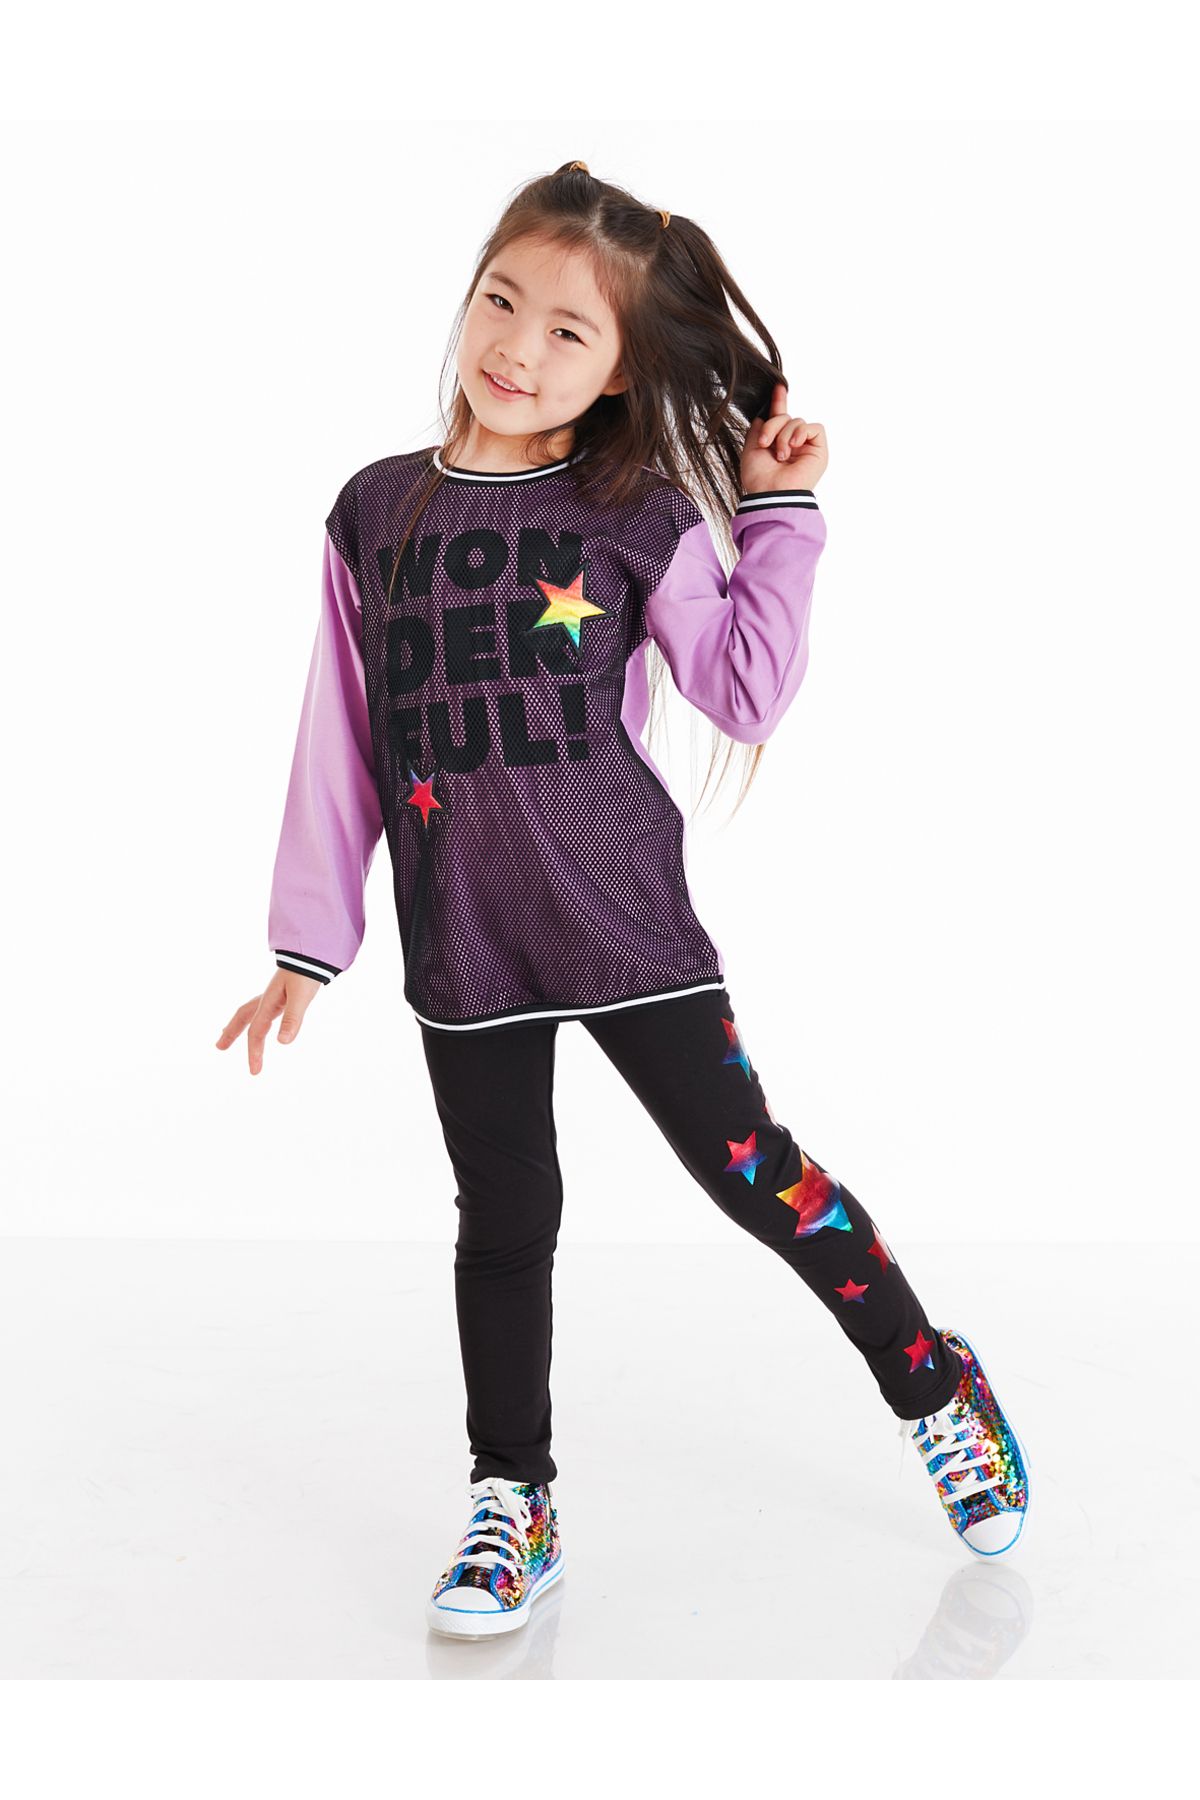 MSHB&G Wonderful Fileli Kız Çocuk Tunik Tayt Takım